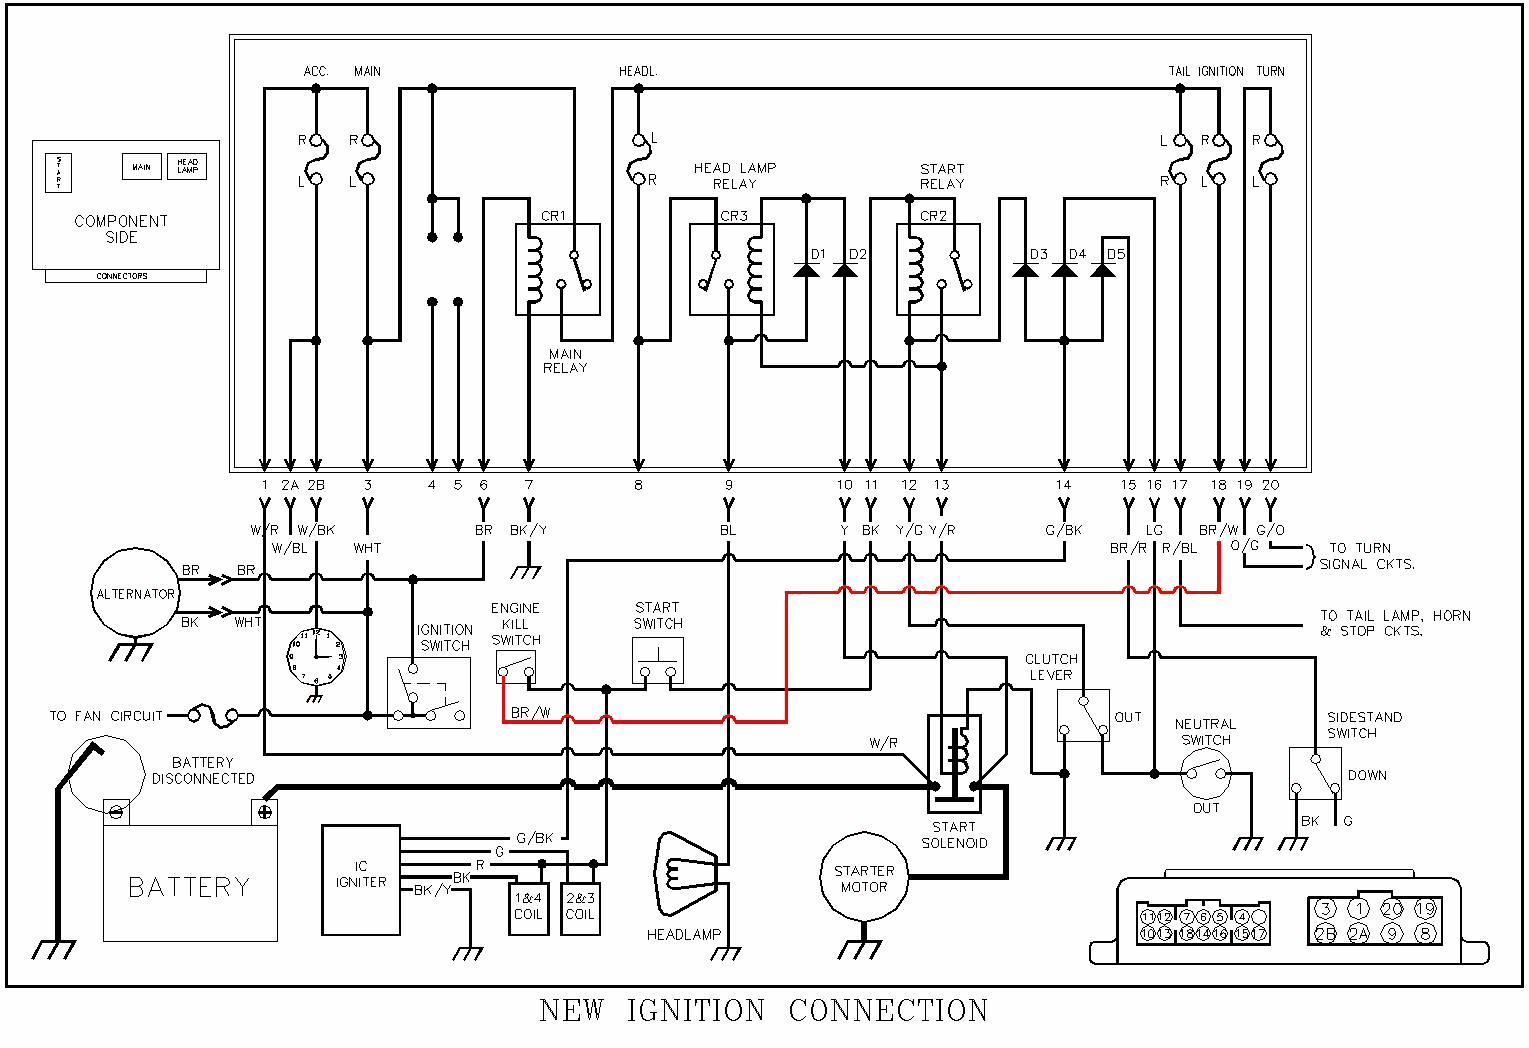 J-Box - How It Works 1980 kawasaki ltd 440 wiring diagram 